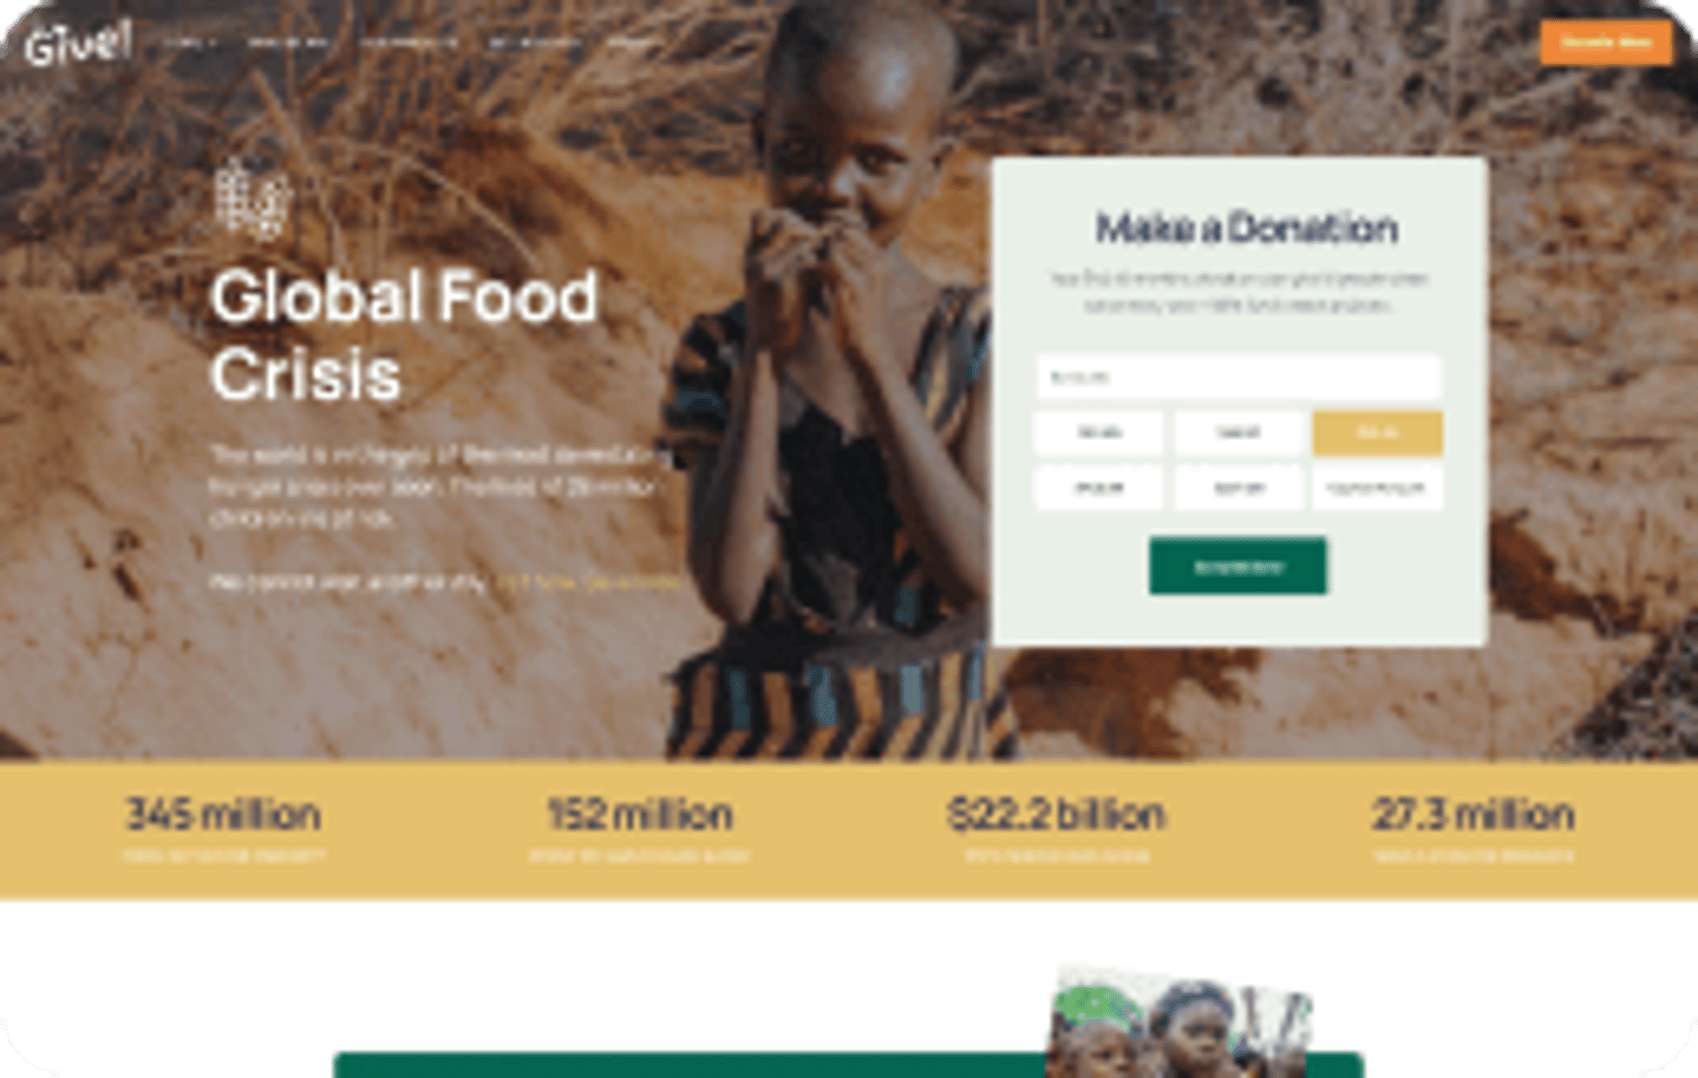 Give - NGO & Charity WordPress Theme - Food Crisis Demo | Cmsmasters studio